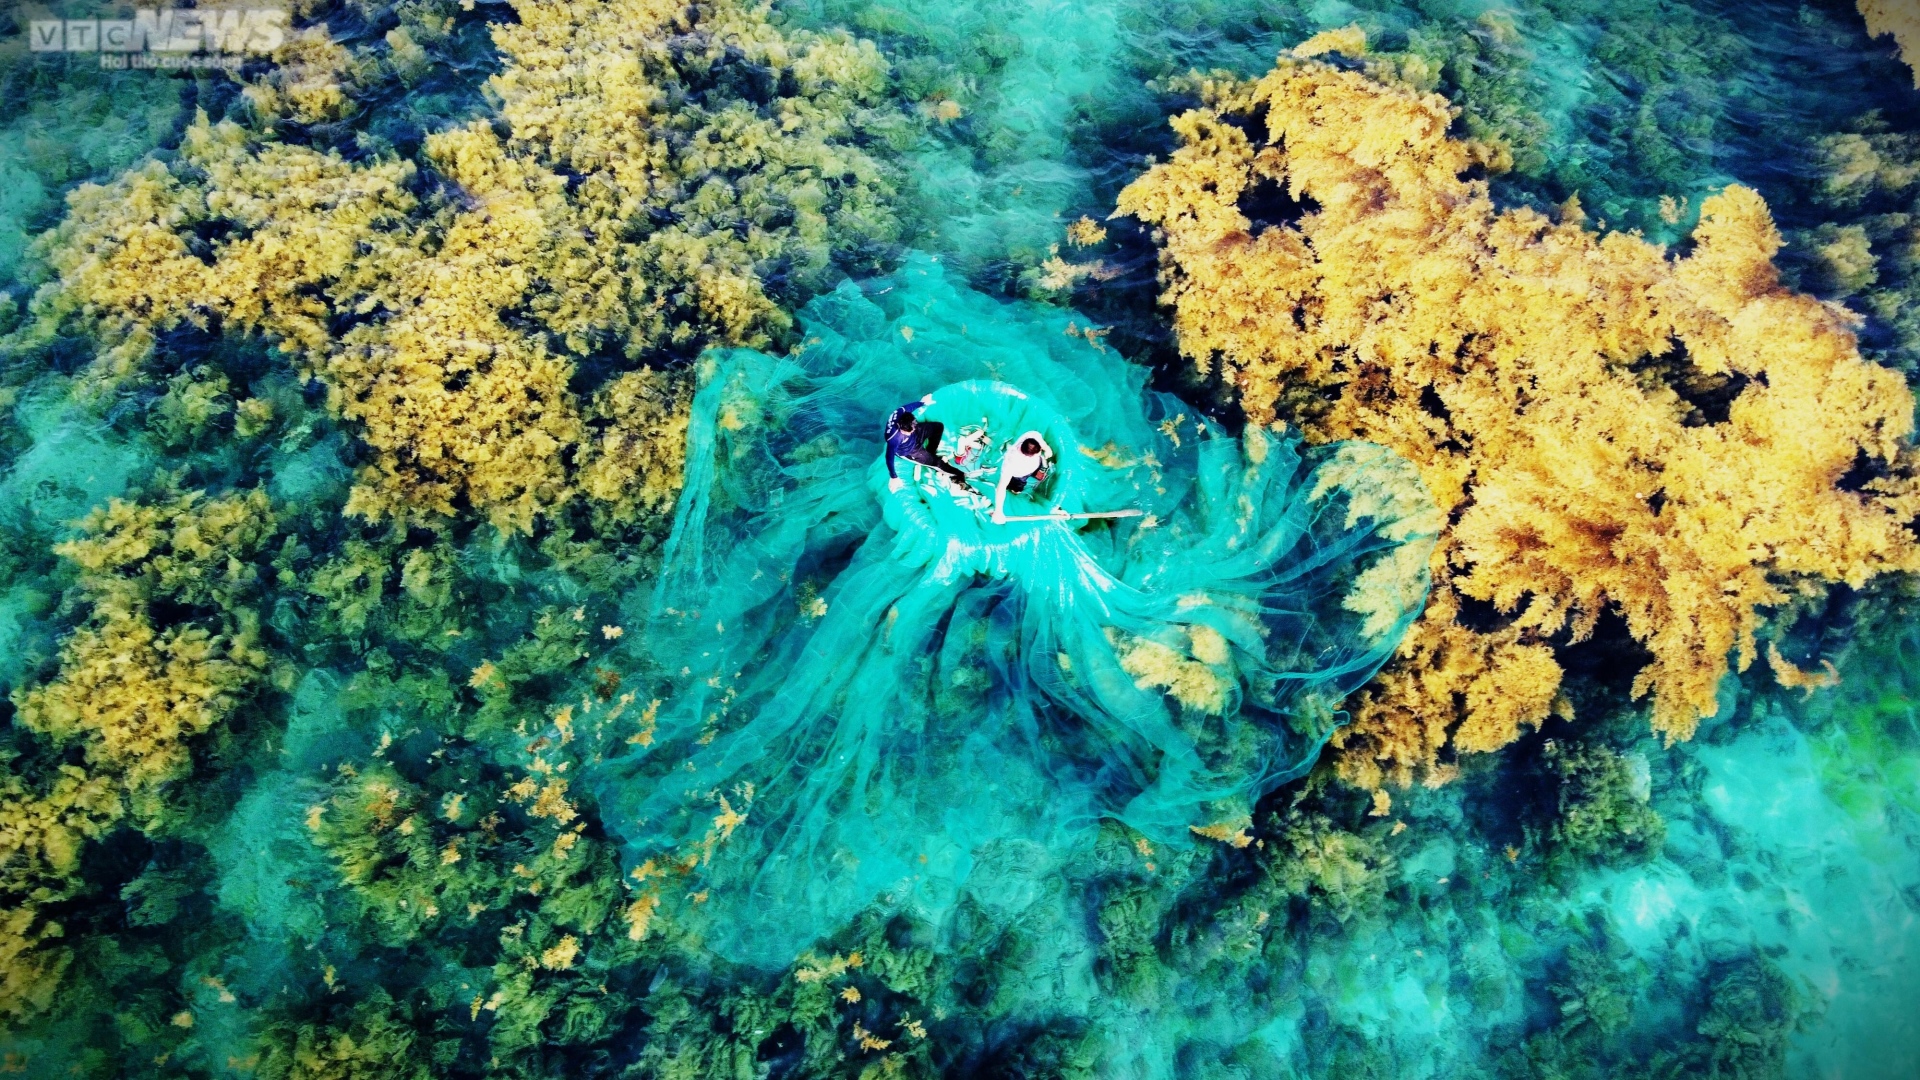 Ngất ngây 'cánh đồng vàng' dưới biển xanh trong ở đảo Hòn Khô, Bình Định - Ảnh 6.